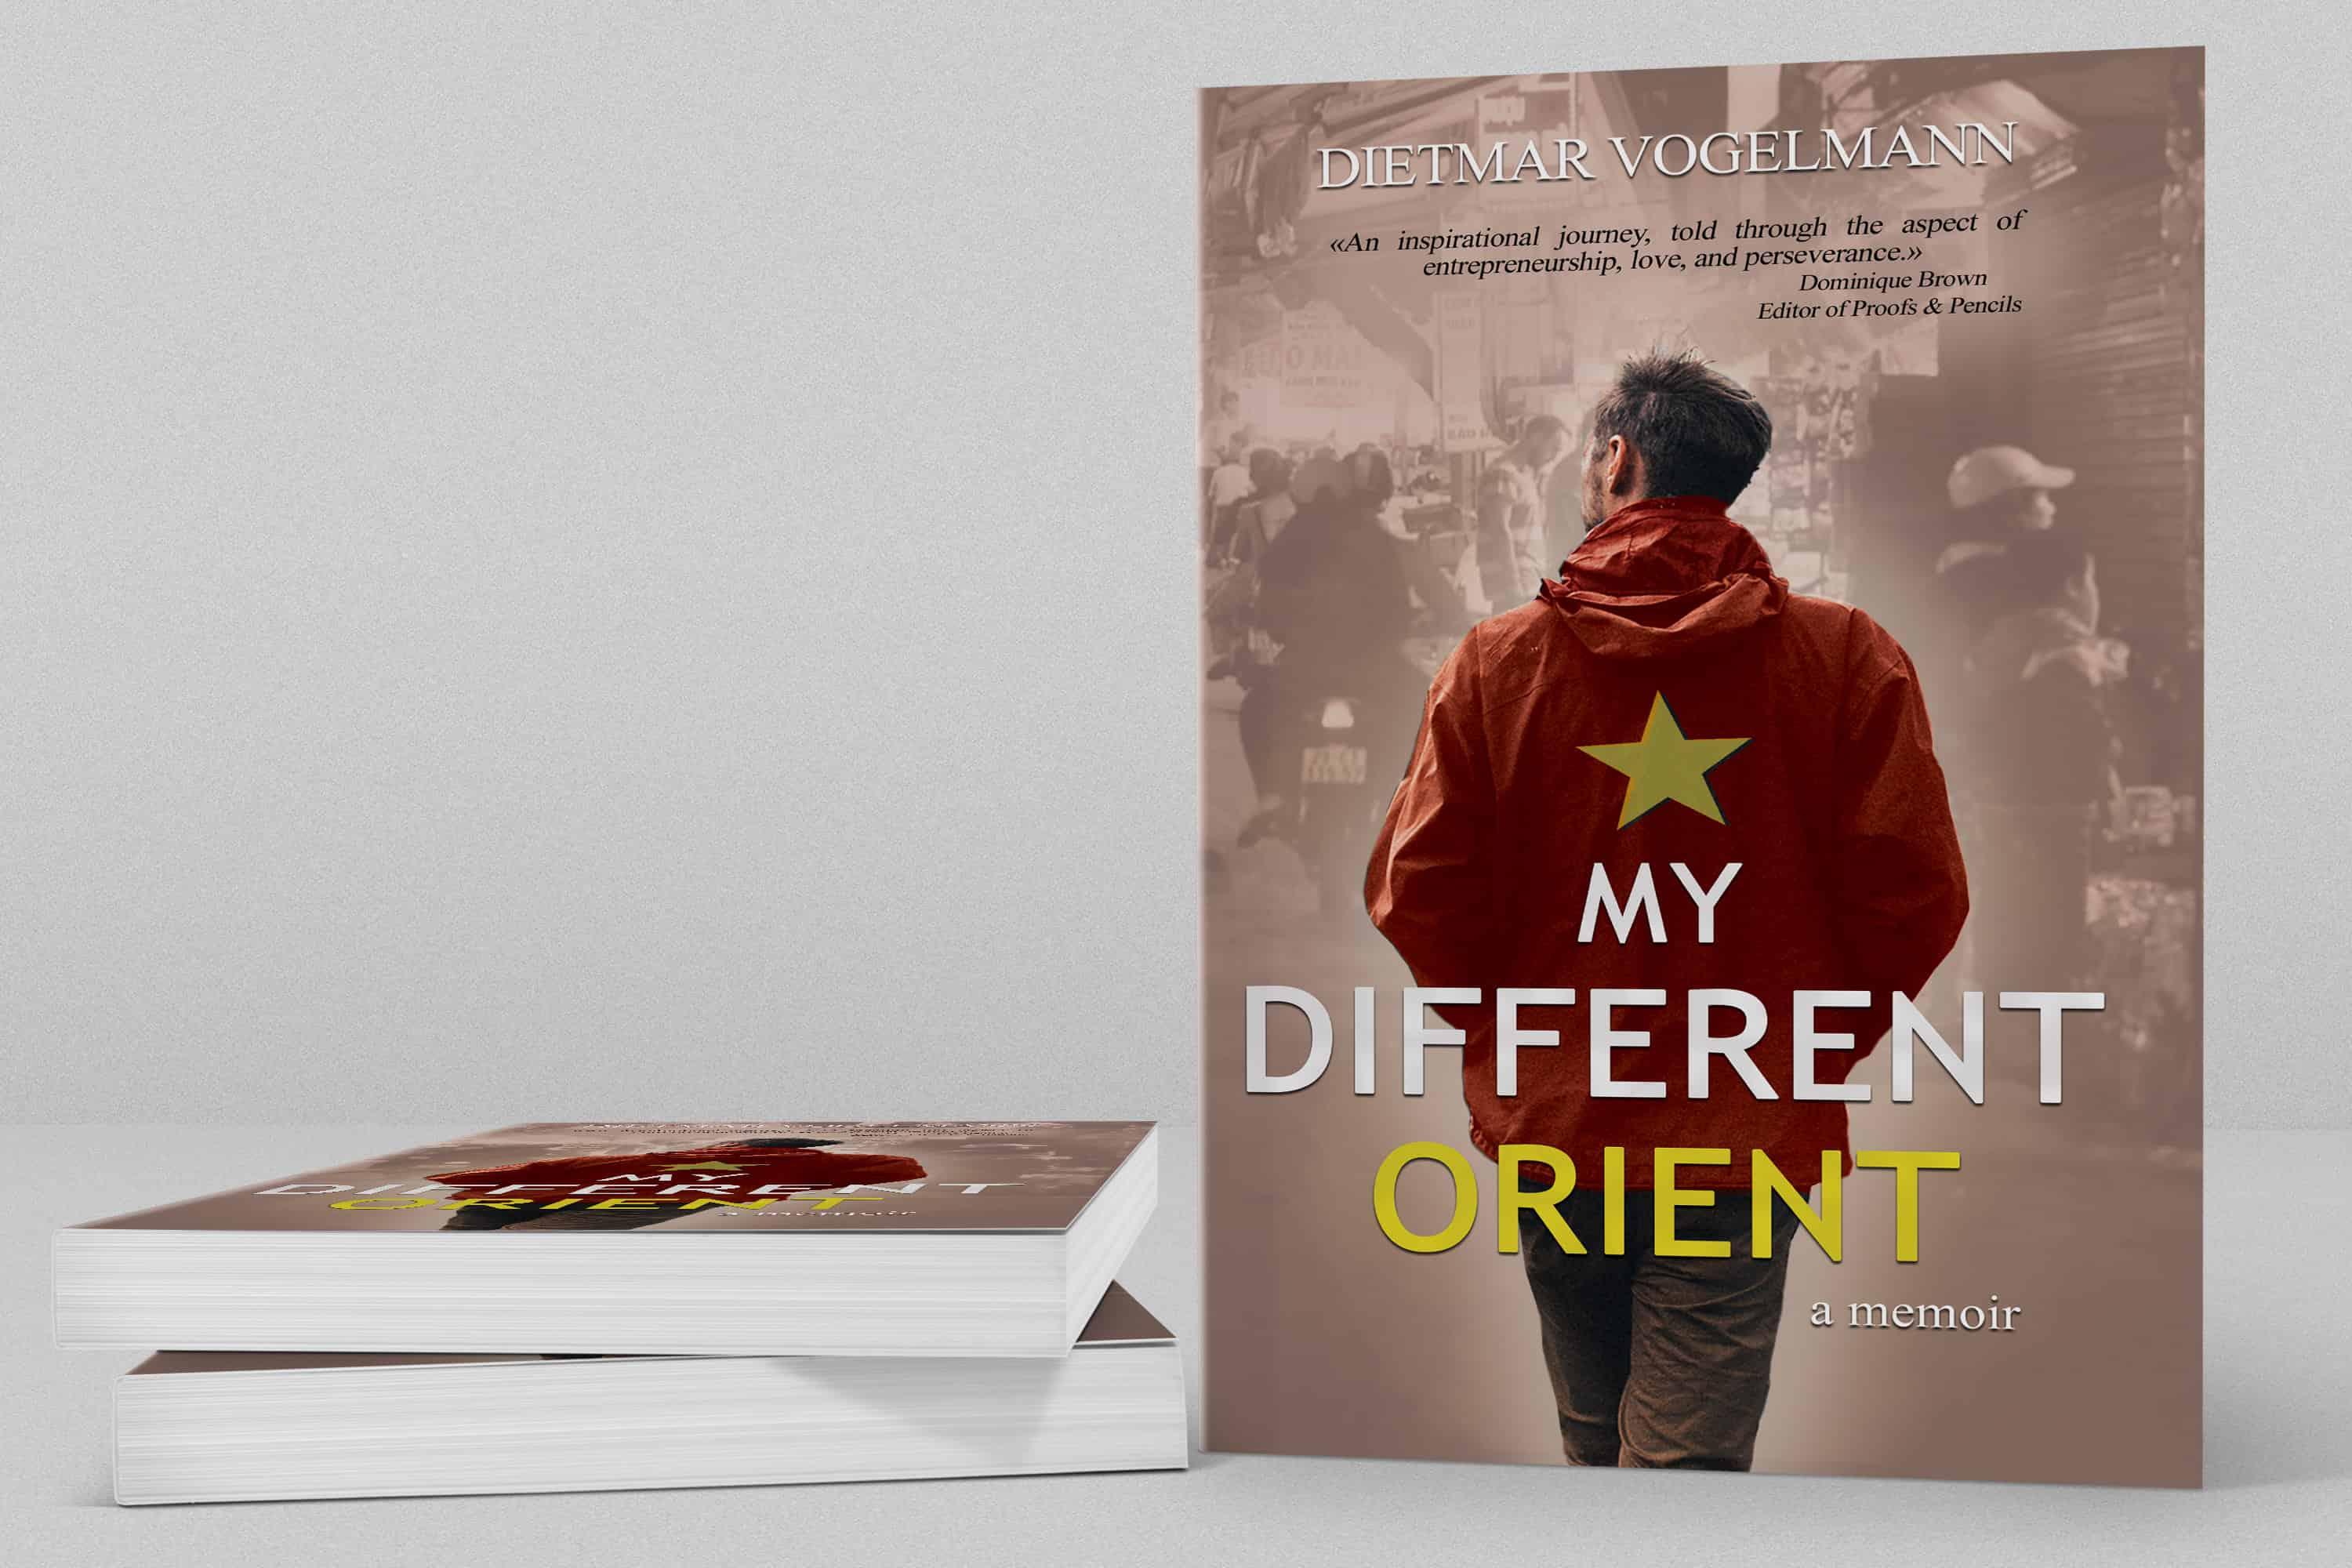 My Different Orient; a memoir by Dietmar Vogelmann